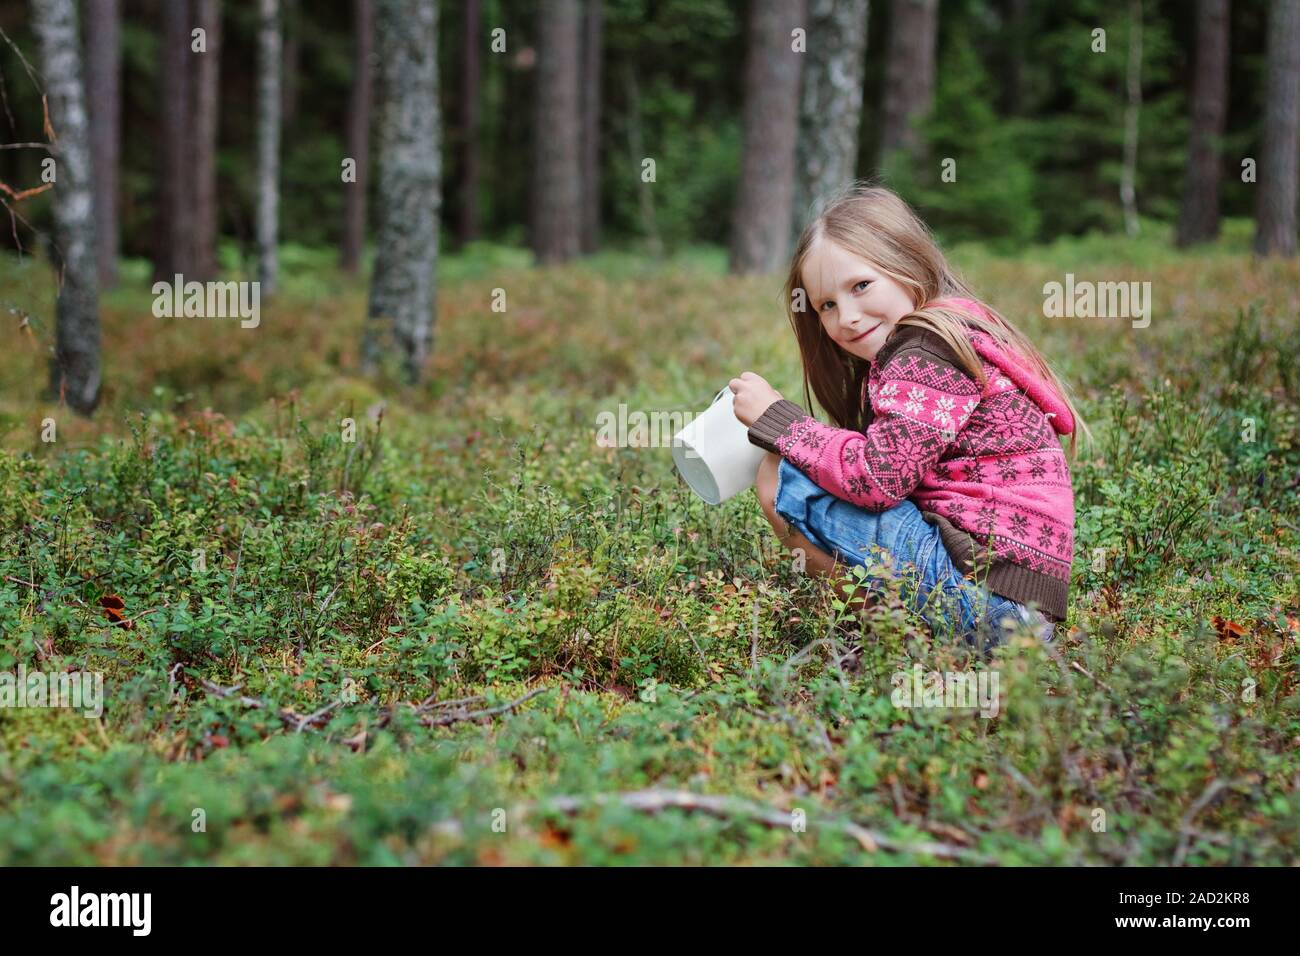 Girl picking berries Stock Photo